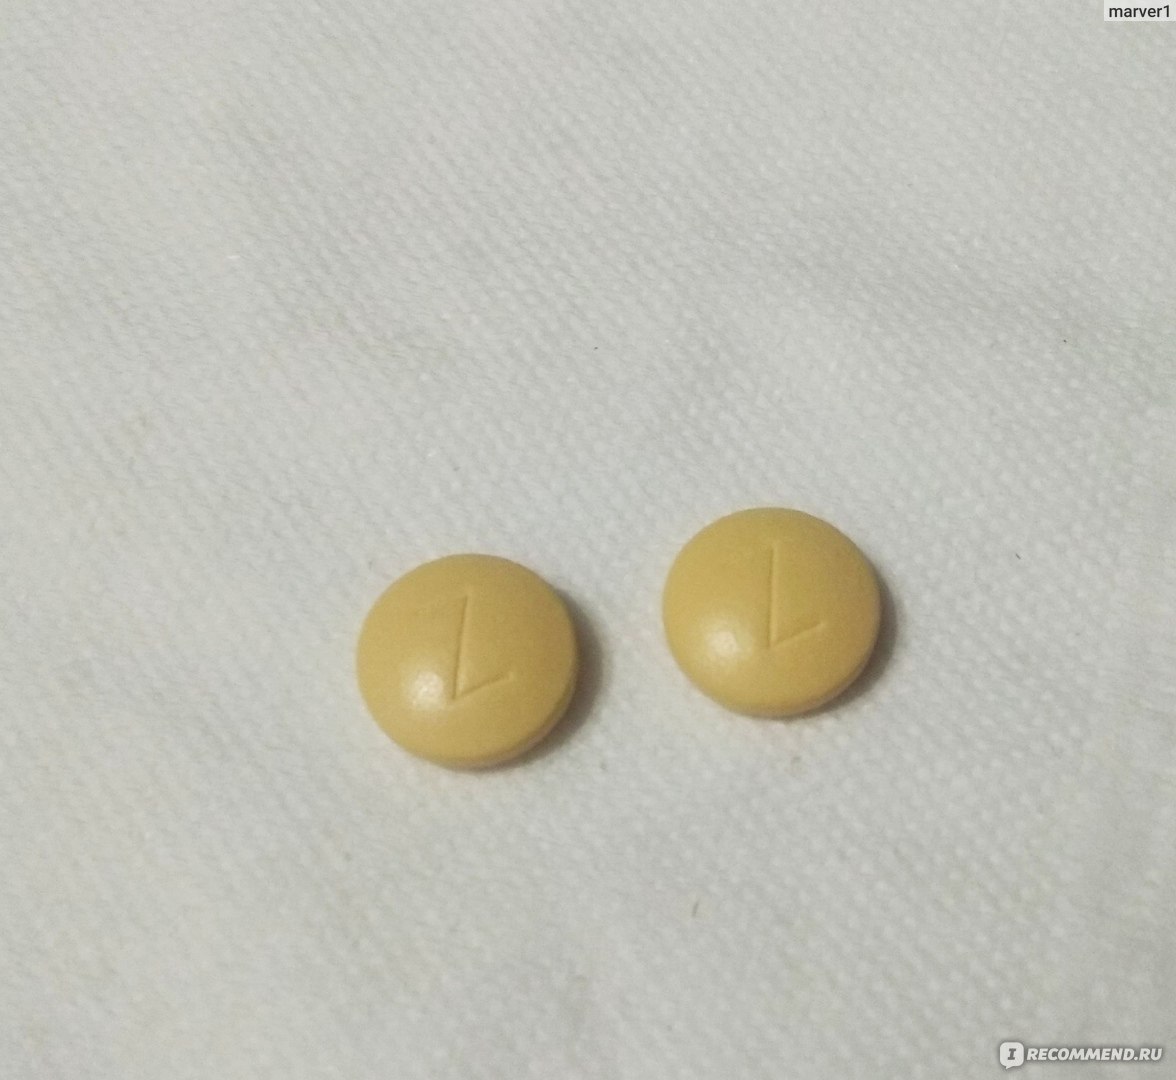 Таблетки бледно-желтого цвета с буквой z сорбифер